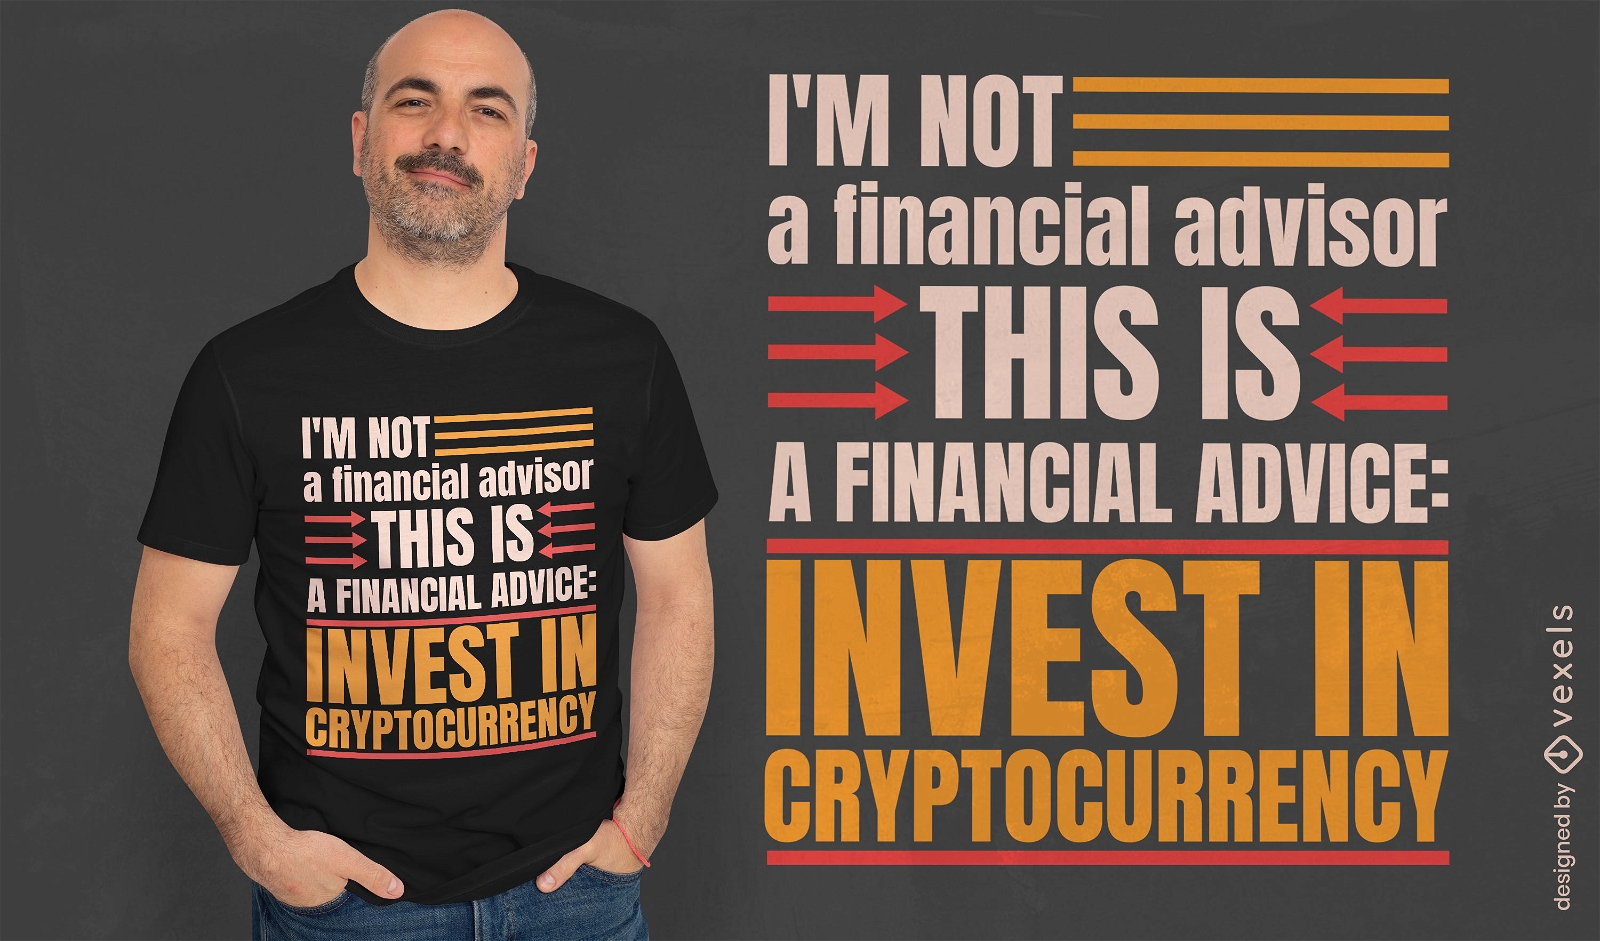 No soy un dise?o de camiseta de asesor financiero.